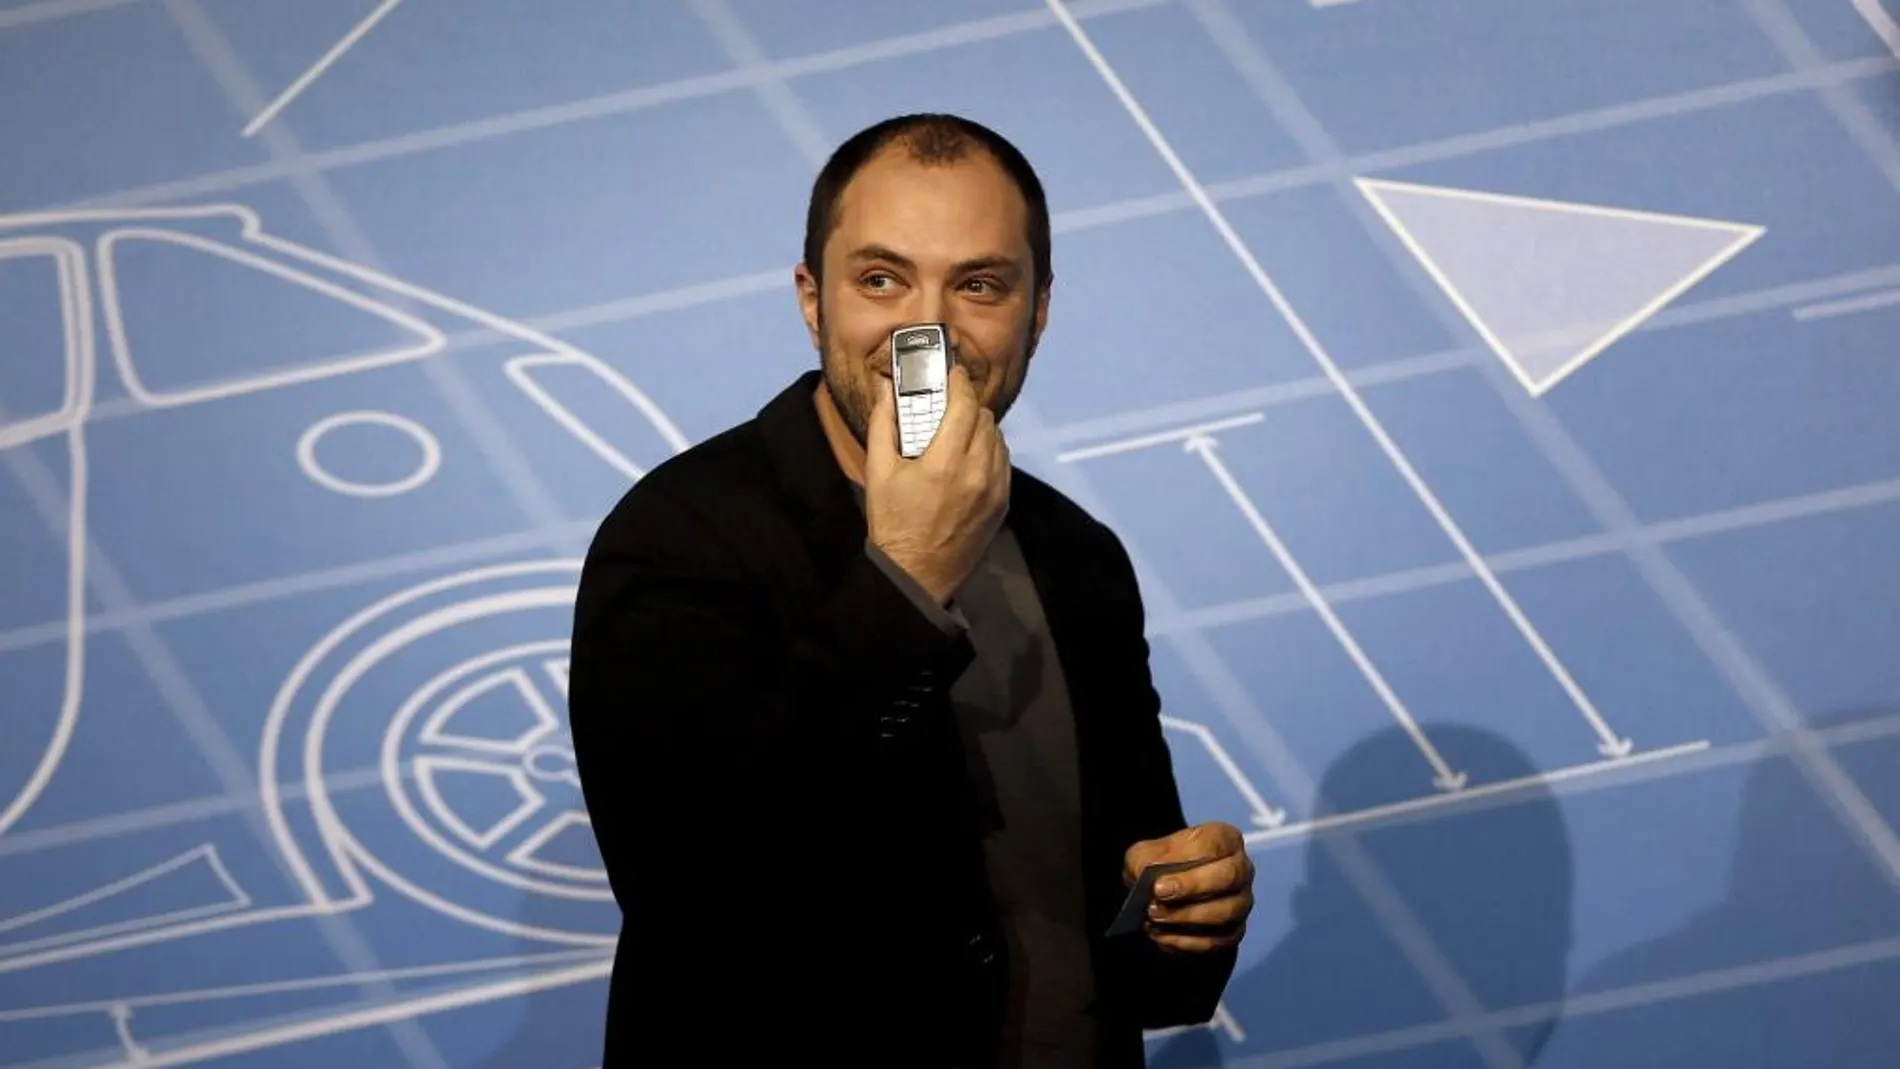 El cofundador de WhatsApp, Jan Koum, muestra su móvil personal durante su intervención en uno de los debates que se celebran en el Mobile World Congress.